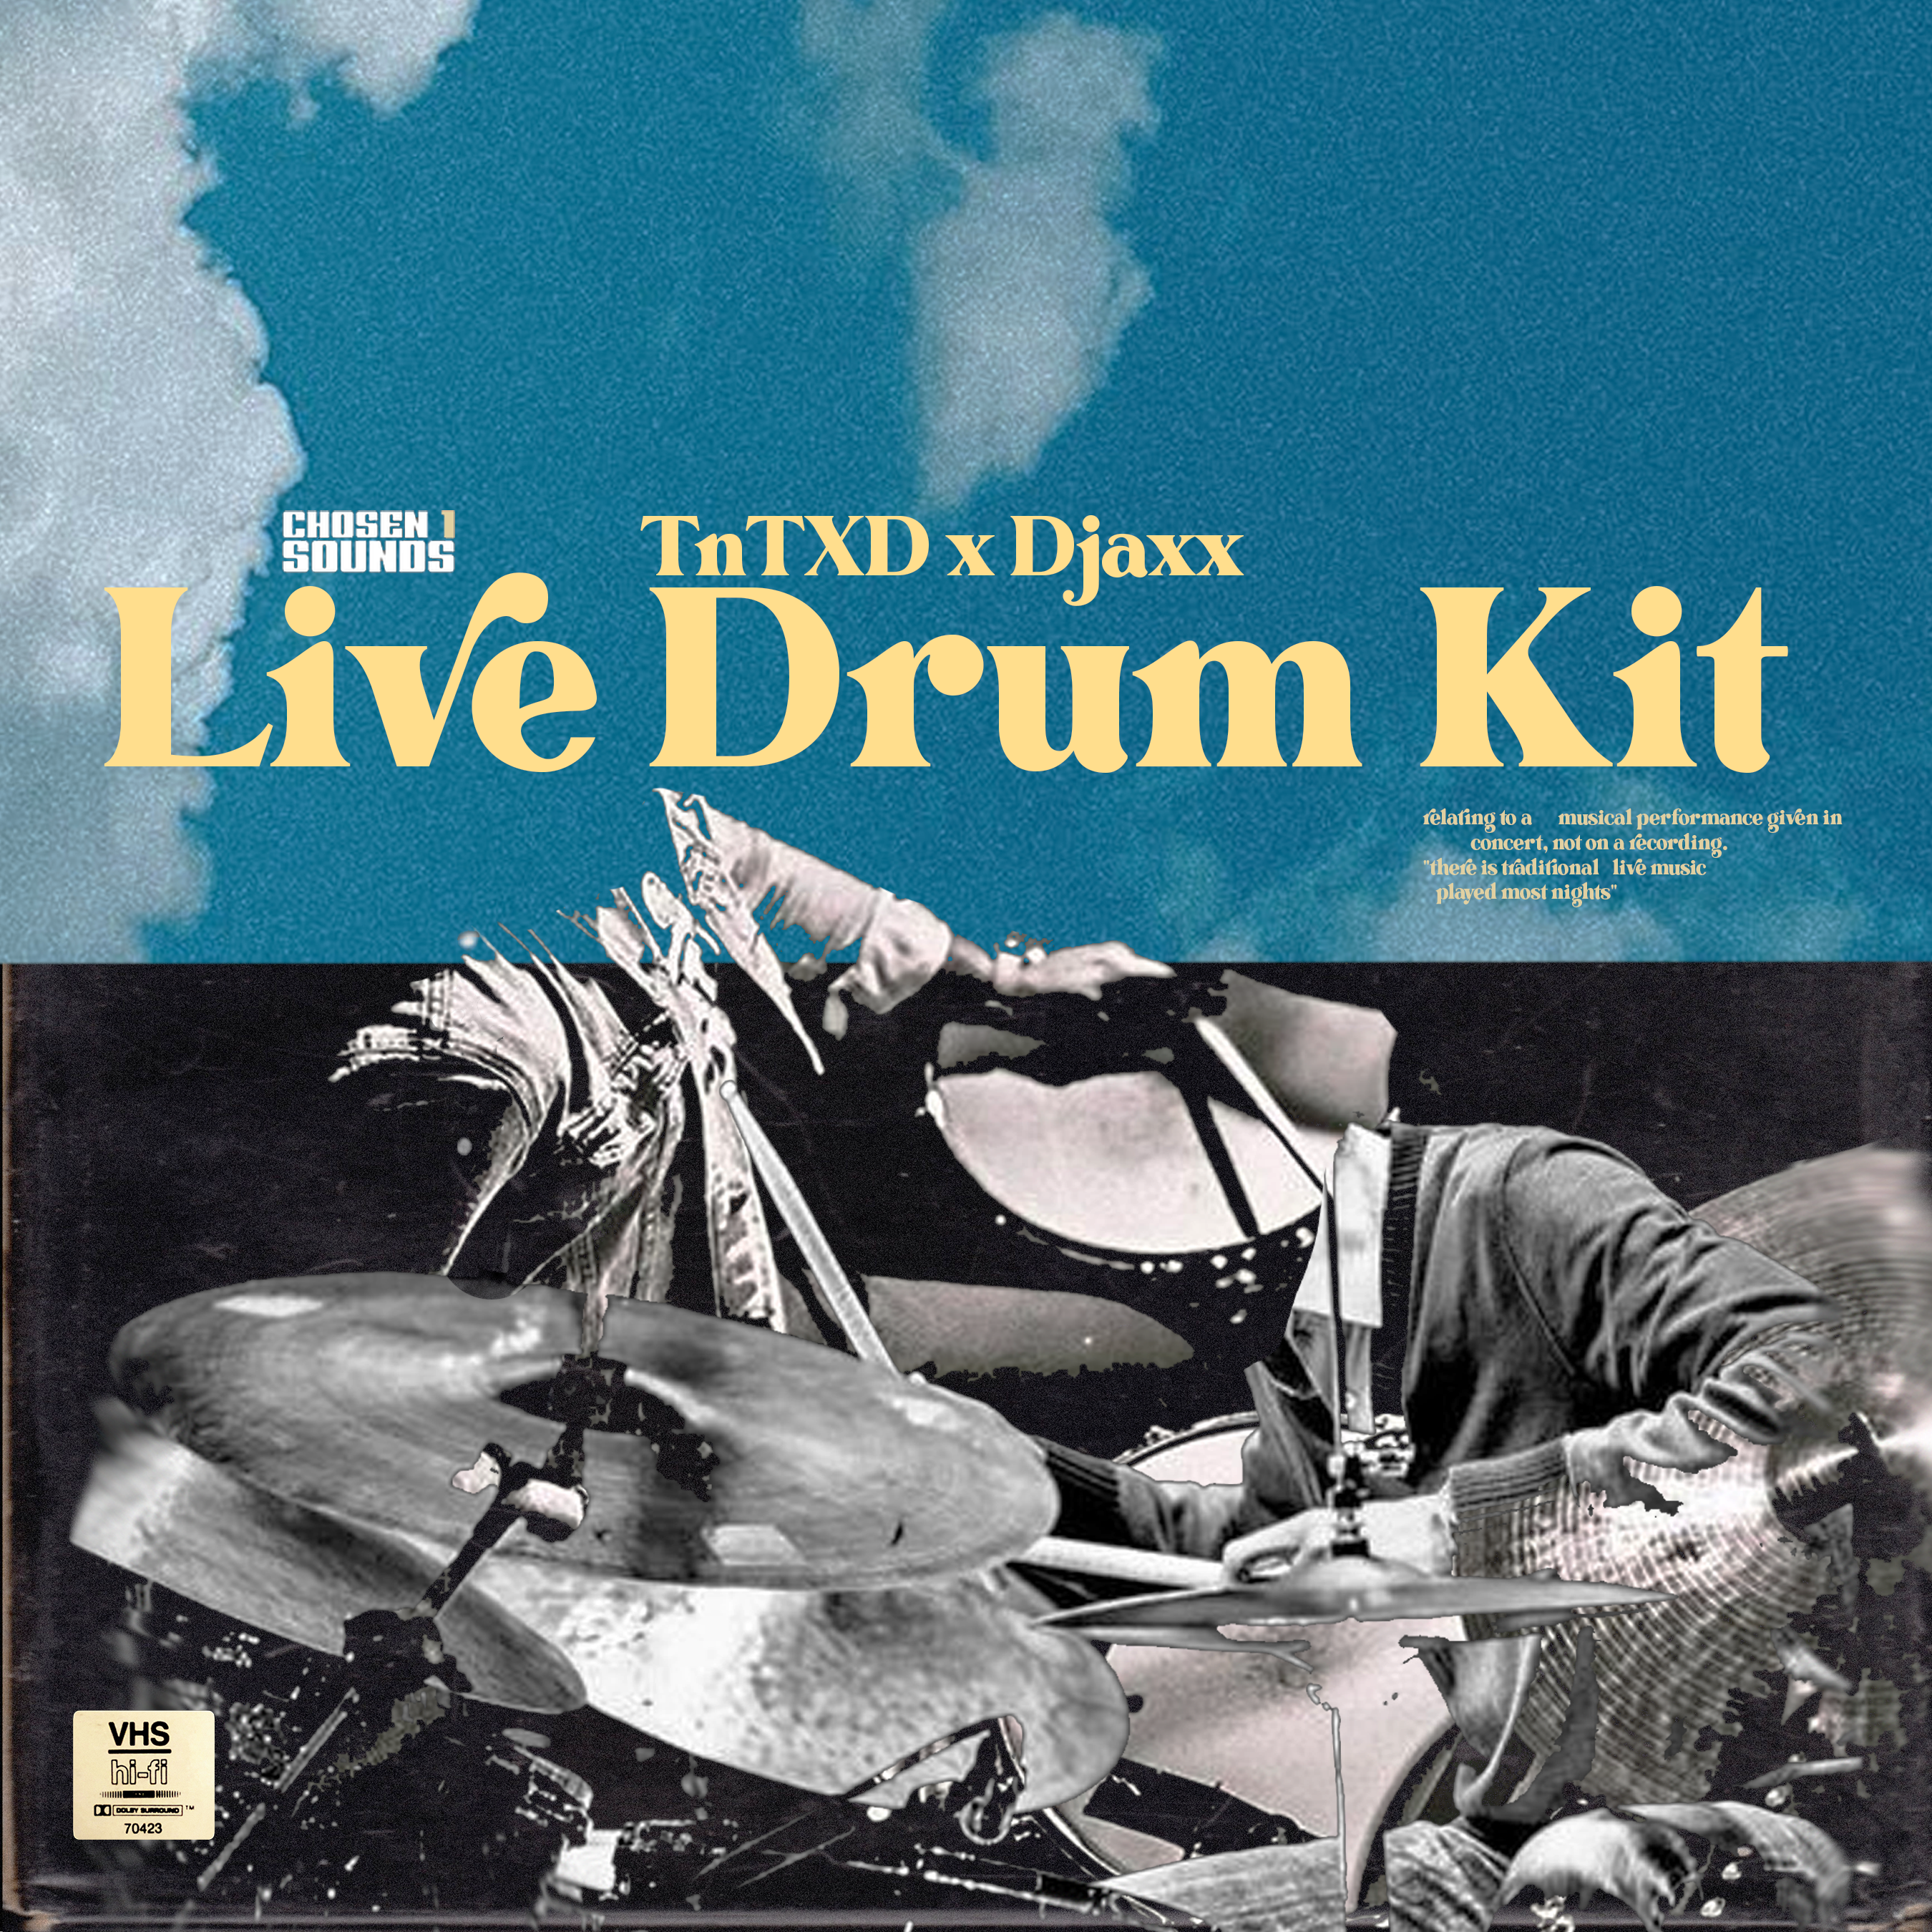 TnTXD x Djaxx Live Drum Kit